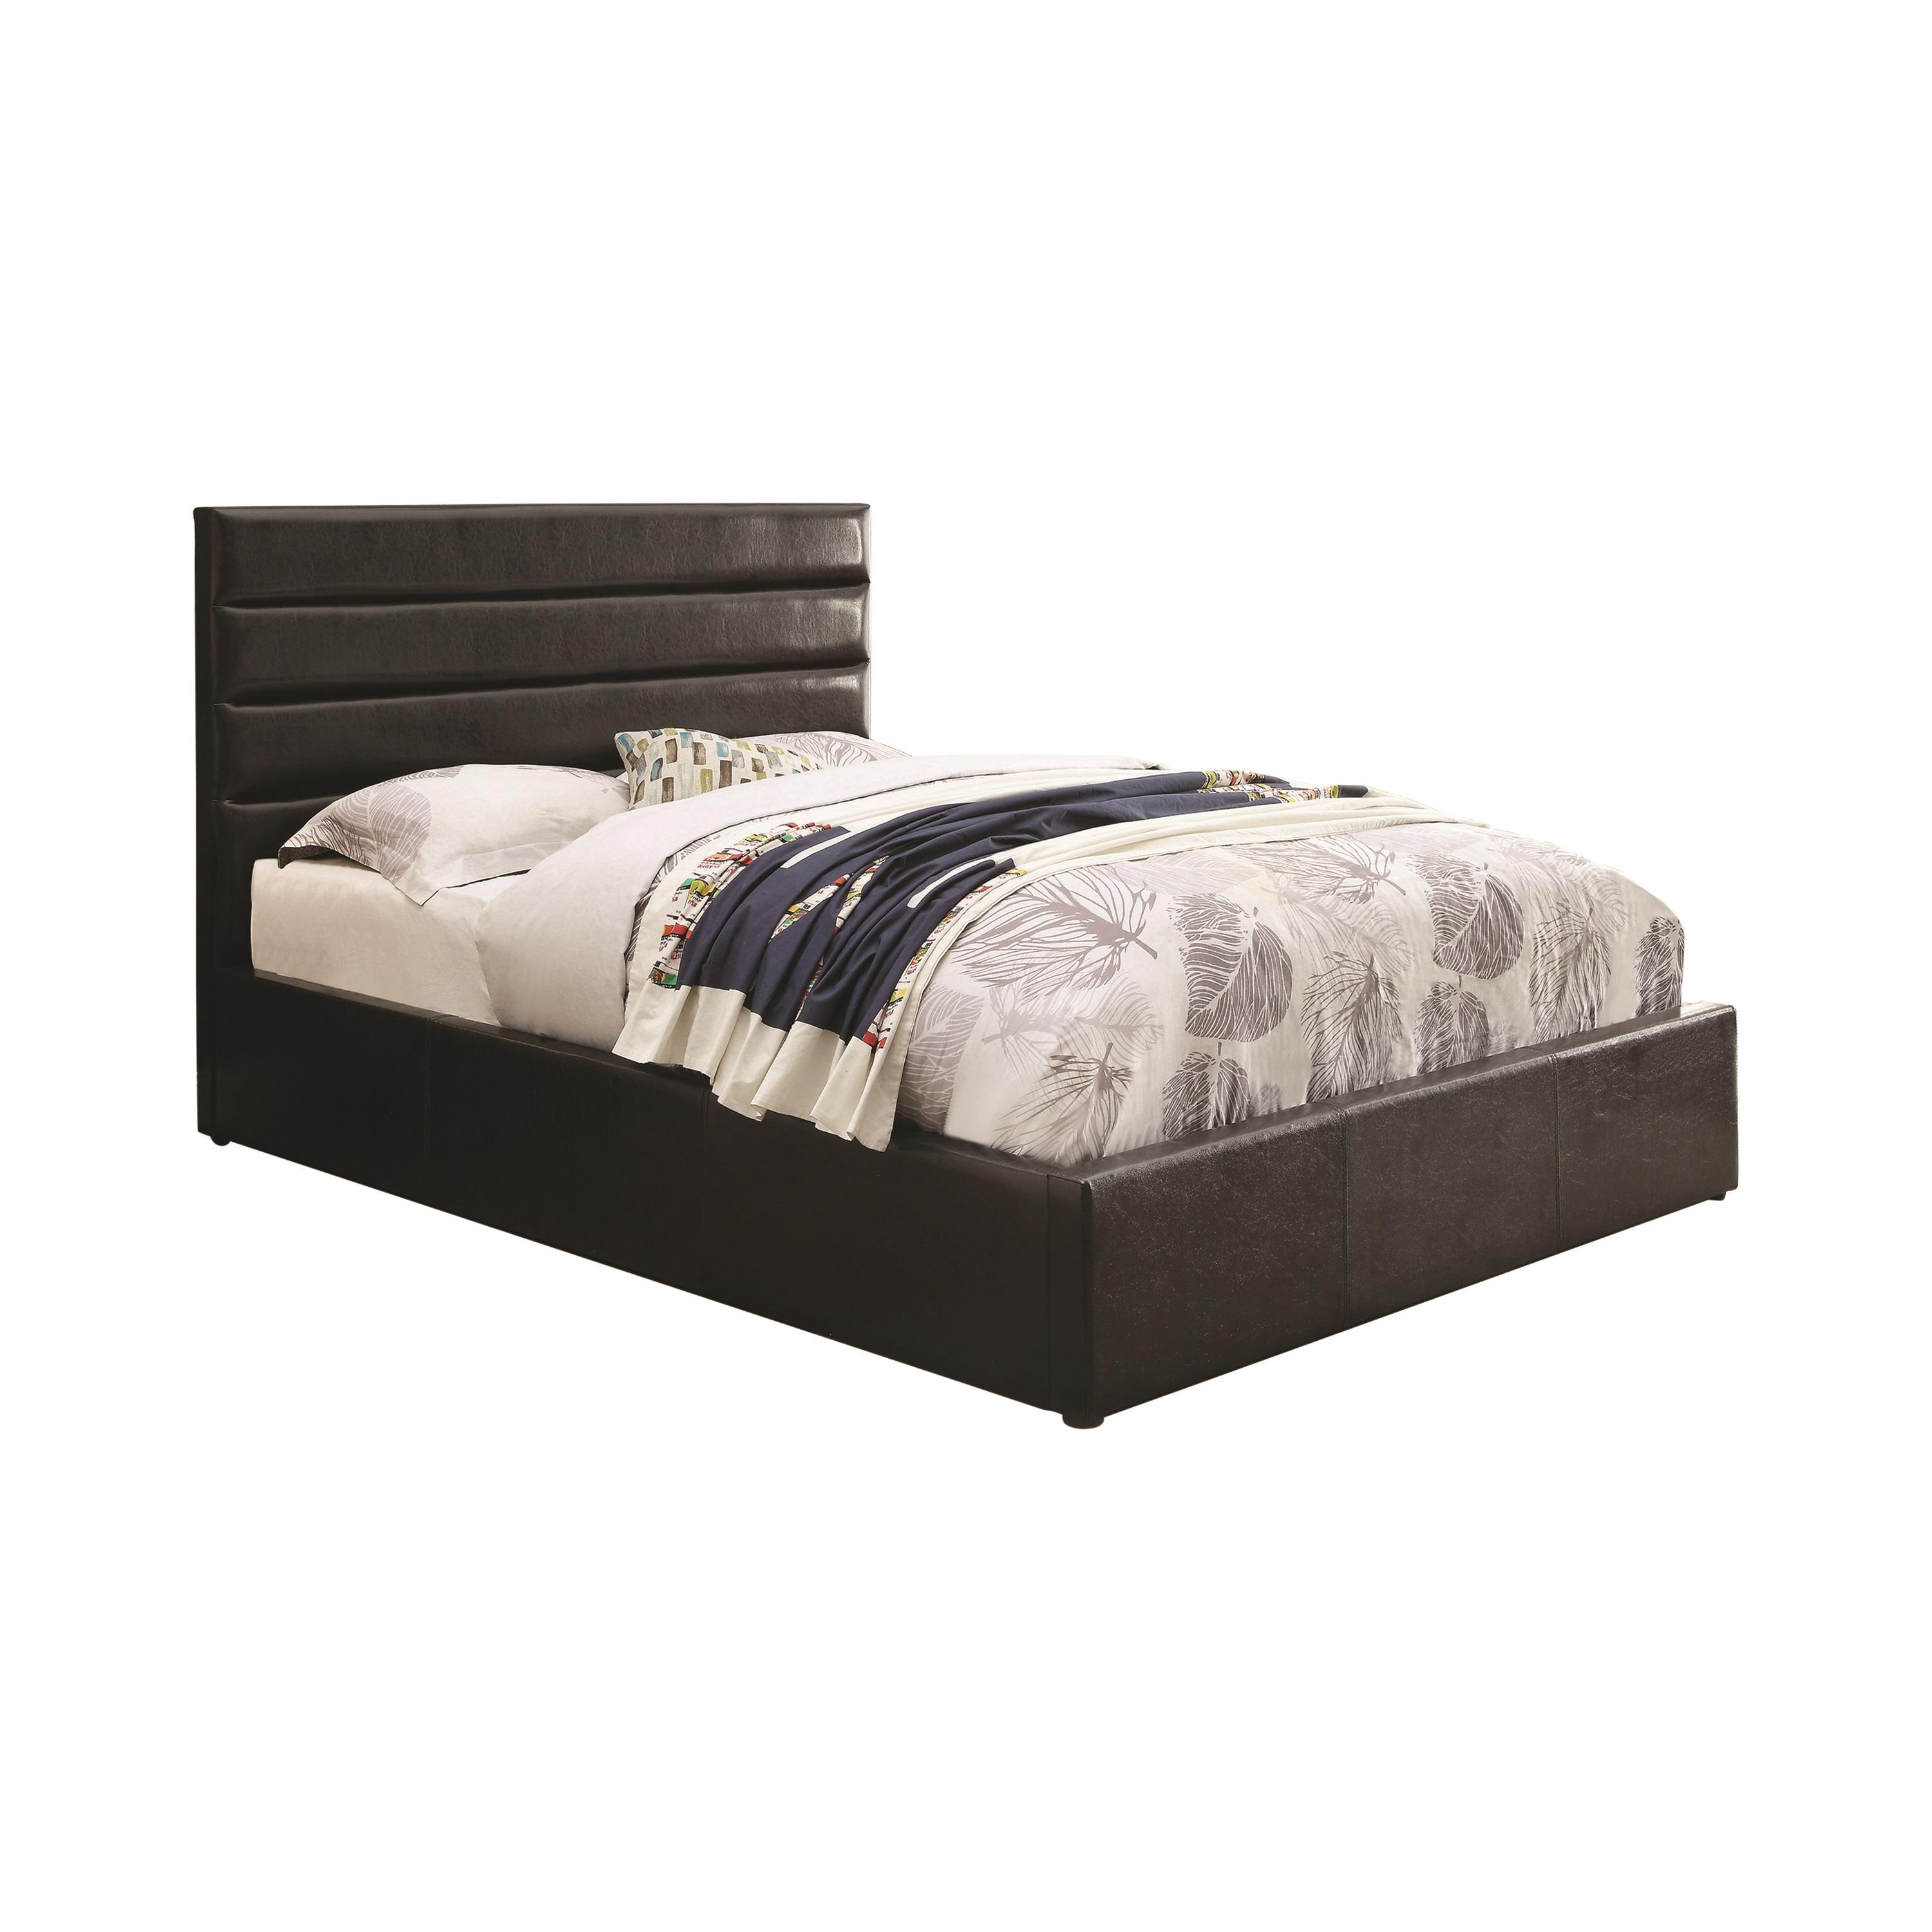 Contemporary Bed 300469KE Riverbend 300469KE in Black Leatherette